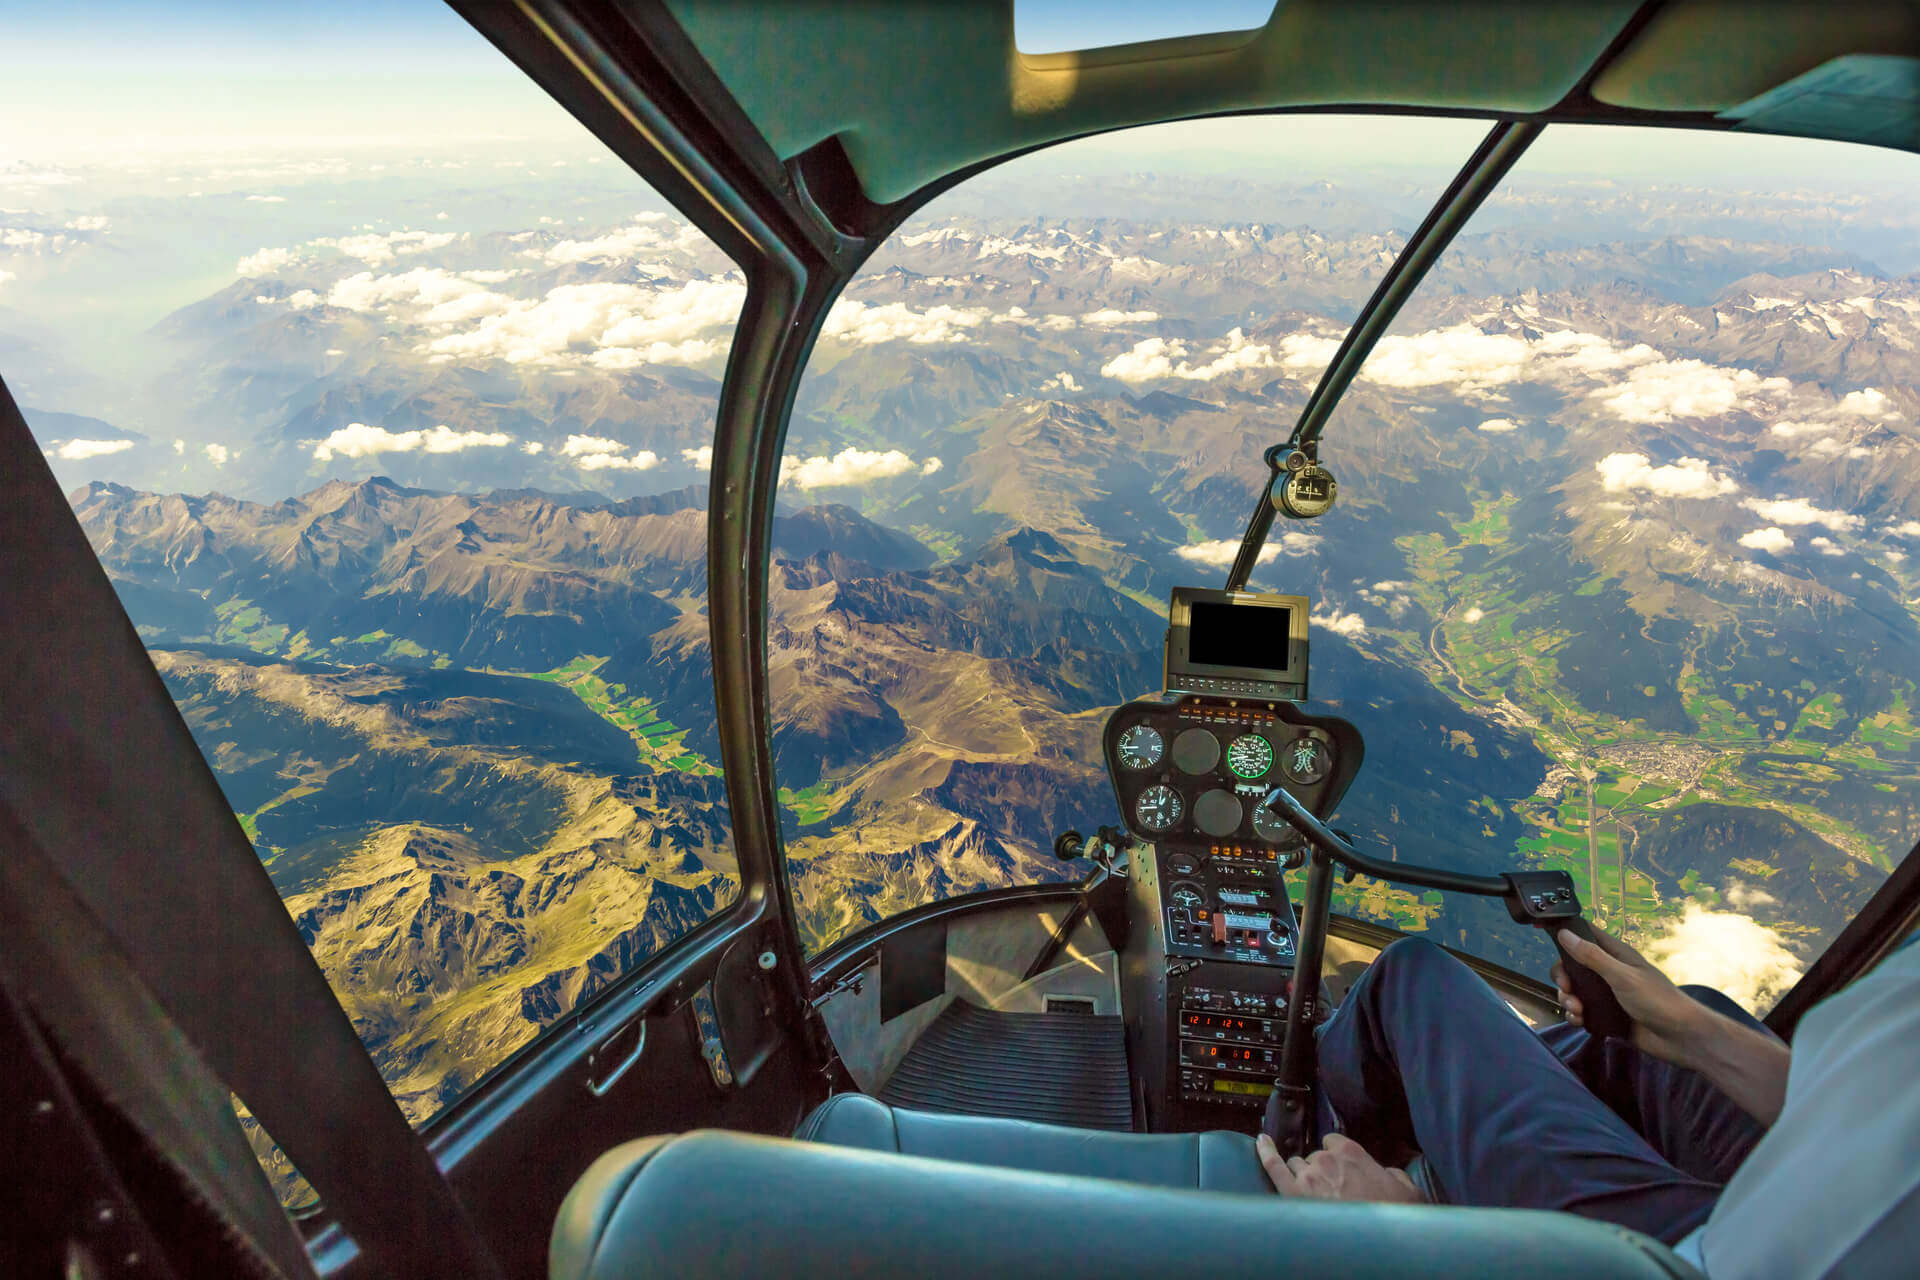 Cockpit d'hélicoptère volant sur un paysage de montagne et un ciel nuageux, avec le bras du pilote conduisant dans la cabine. Vue aérienne spectaculaire des Alpes.